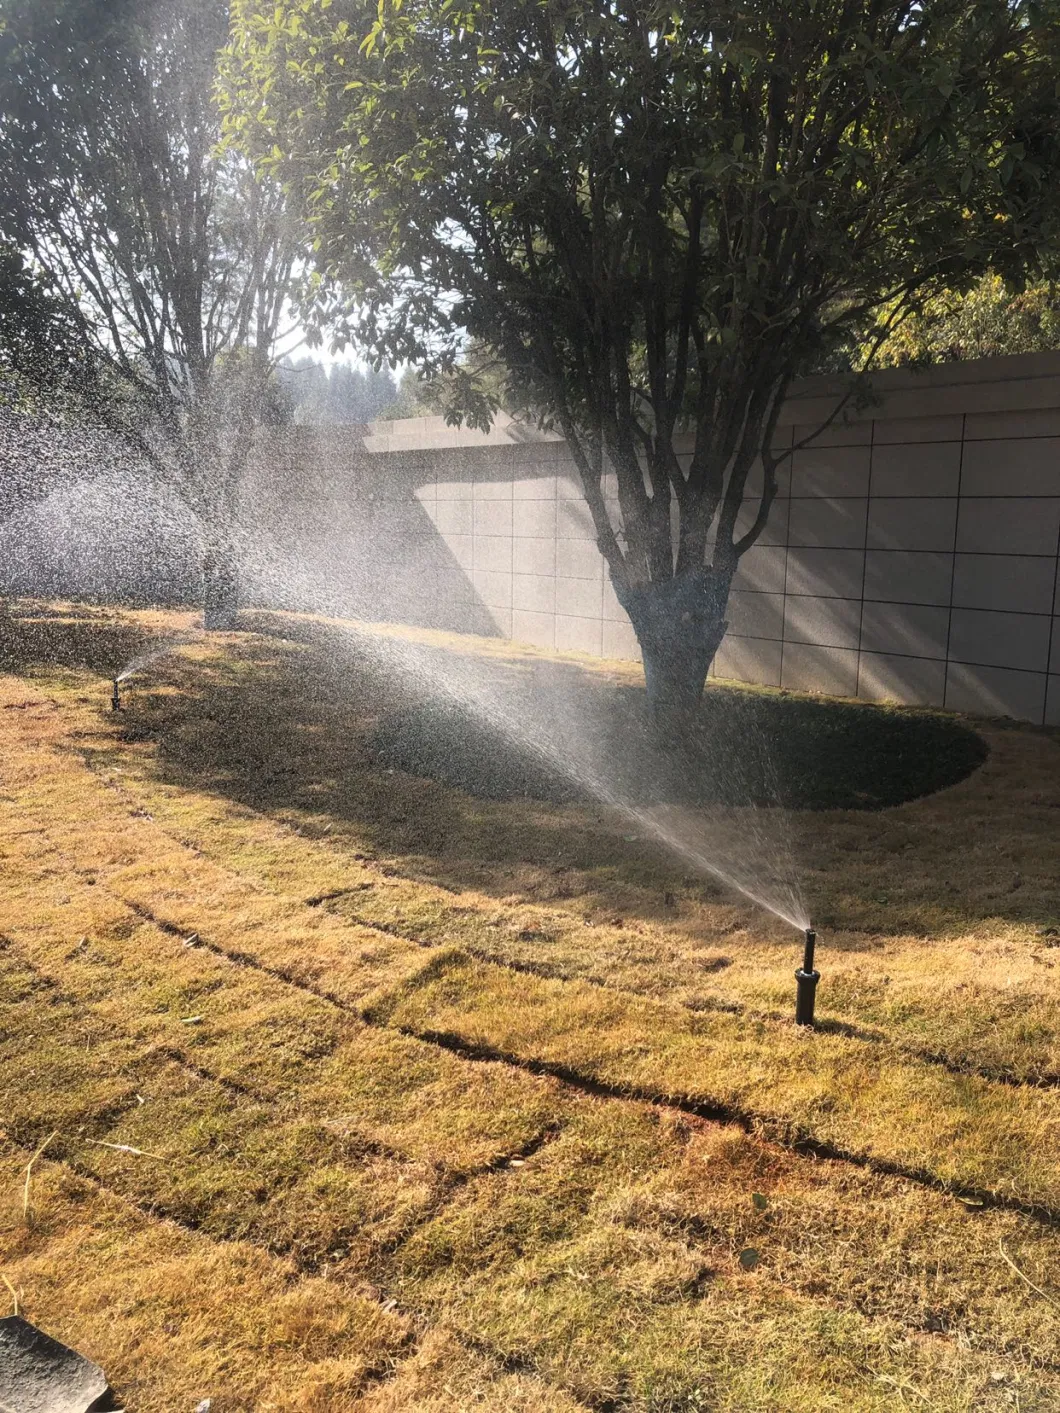 Scattering Pop up Sprinkler Rotating Lawn Sprinkler Irrigation System Garden Sprinklers